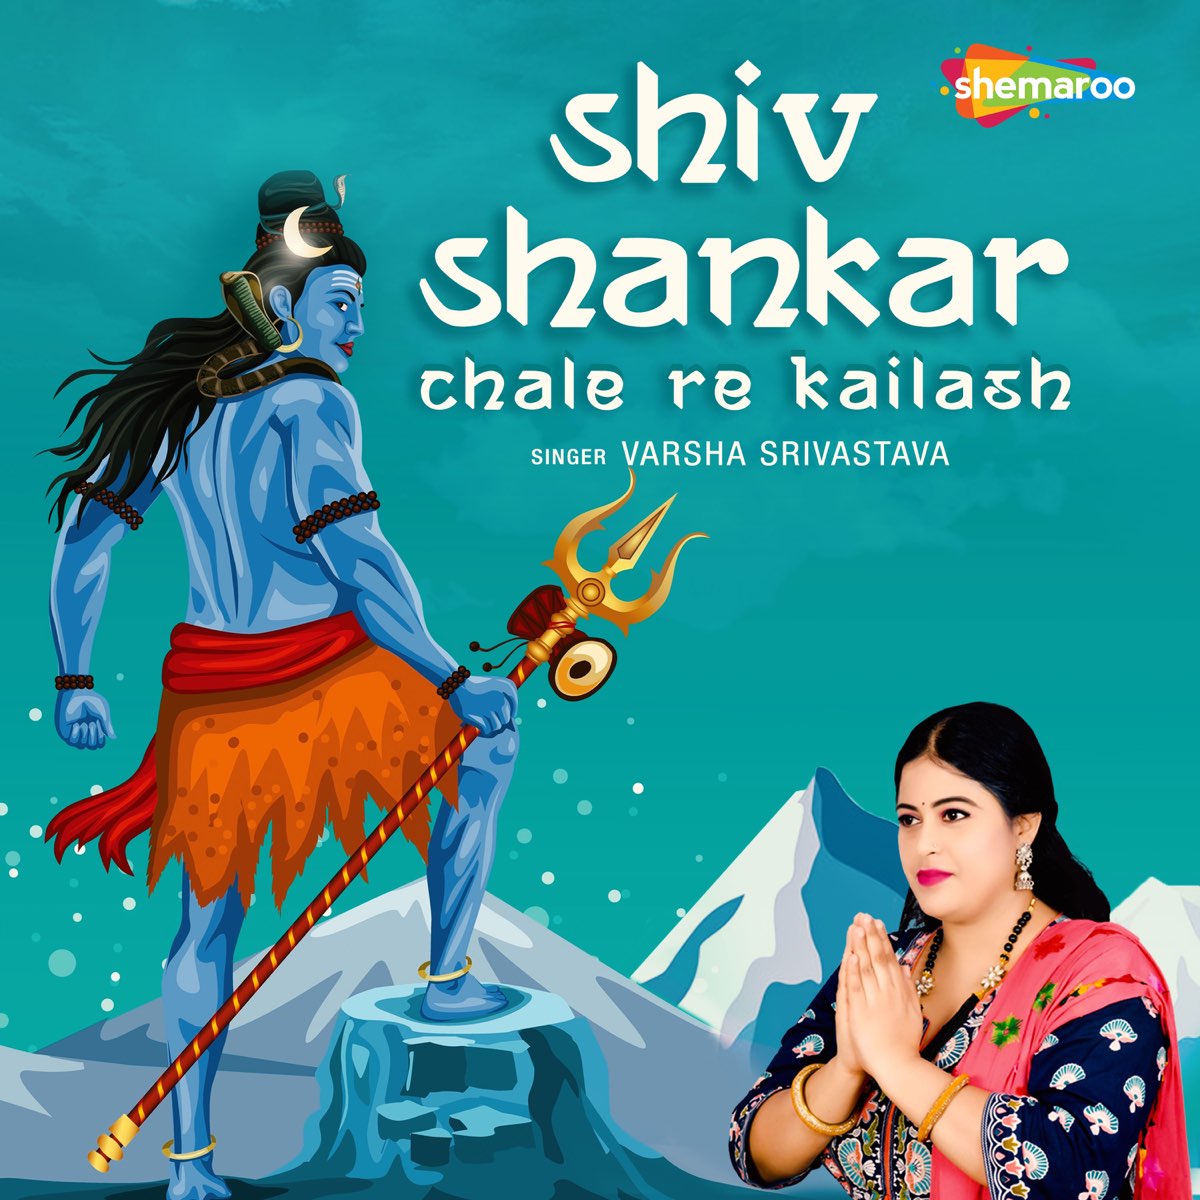 Shiv Shankar Chale Re Kailash - Single by Varsha Srivastava on Apple Music